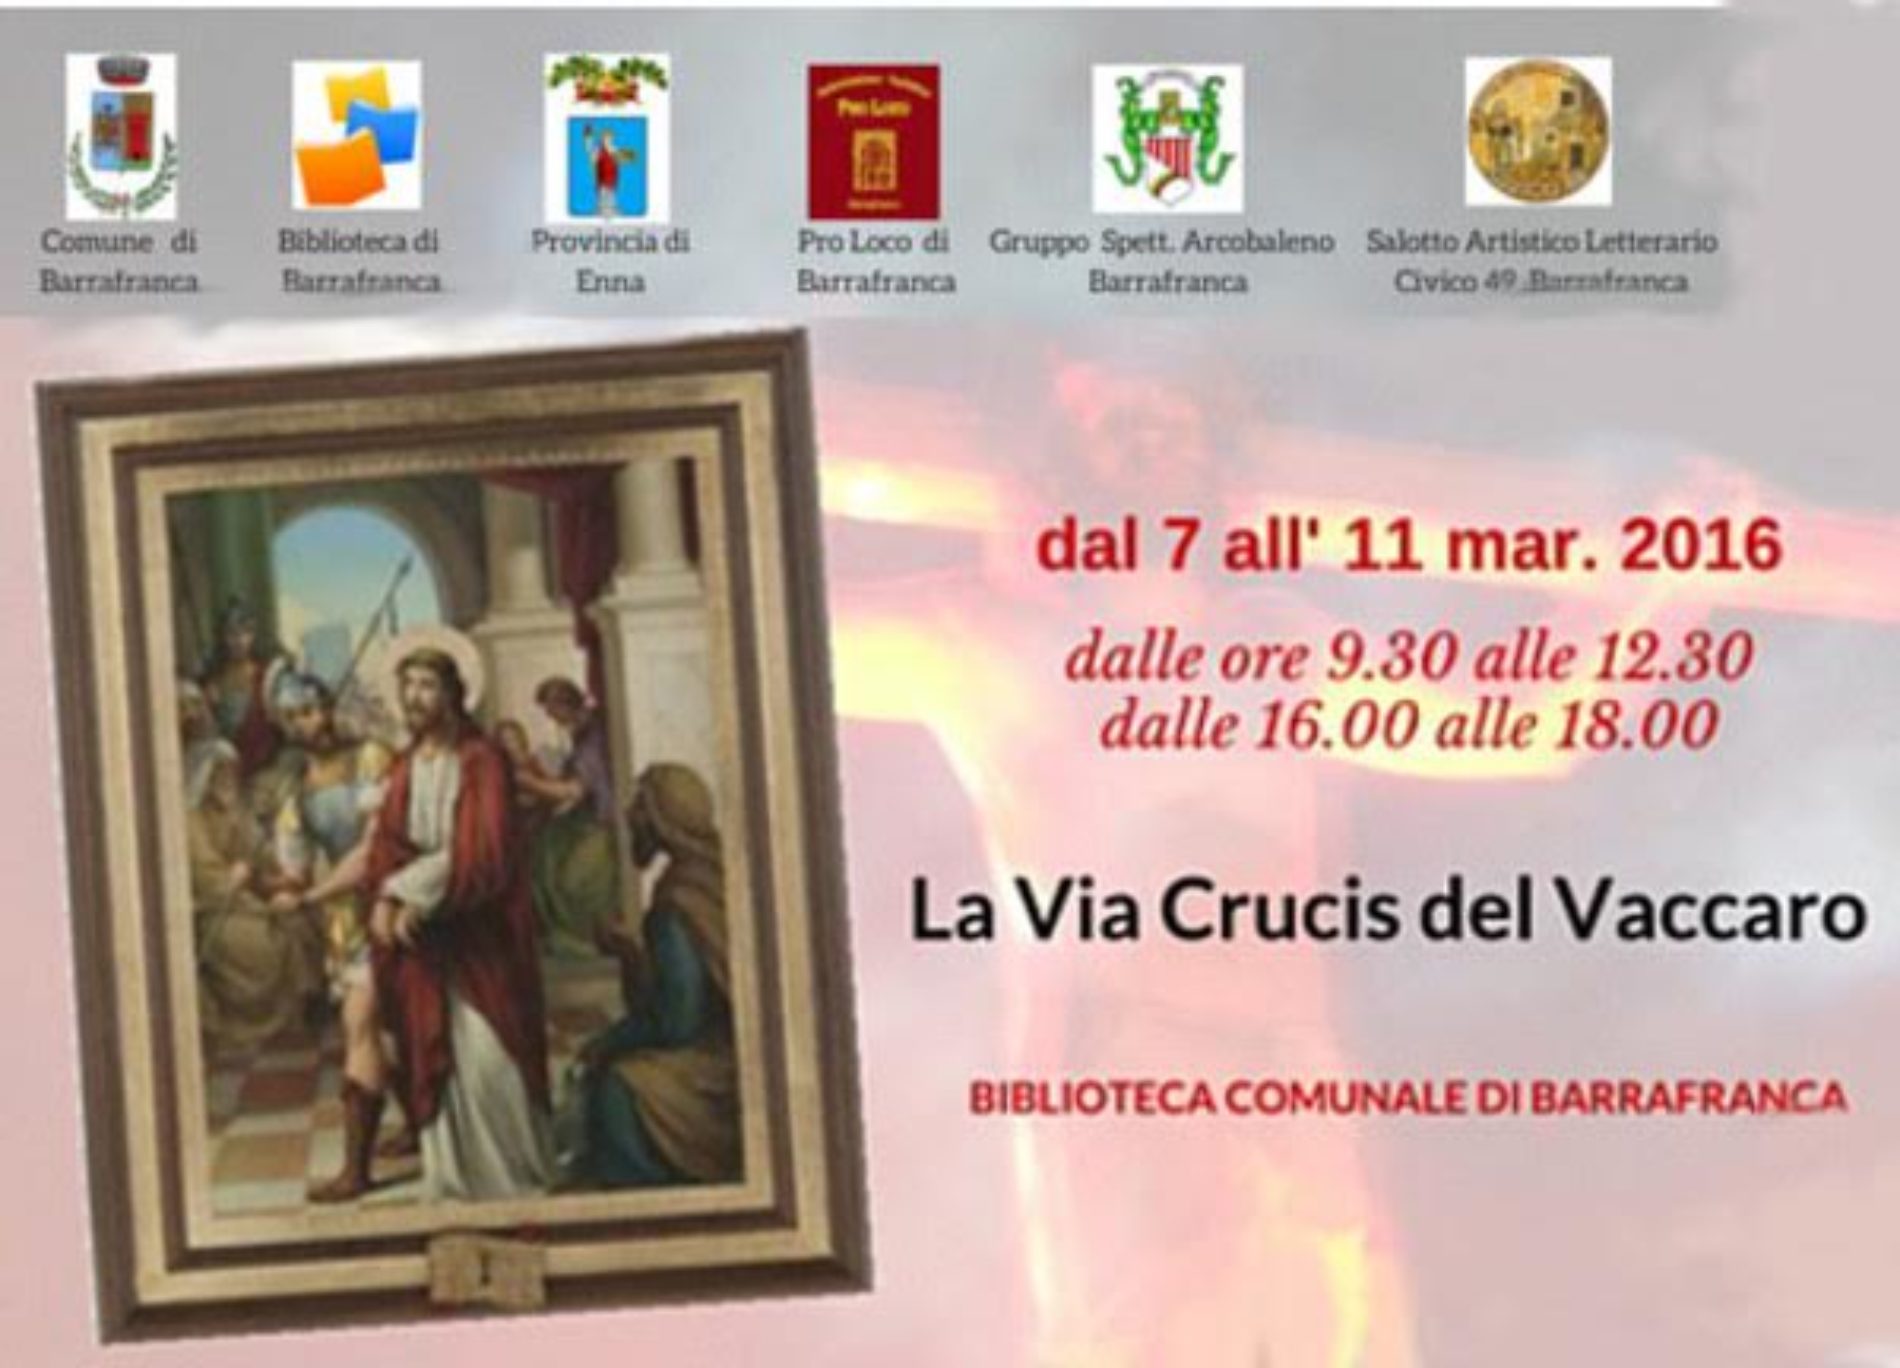 Mostra “La Via Crucis del Vaccaro”: dal 07 all’ 11 marzo 2016 presso la Biblioteca Comunale di Barrafranca